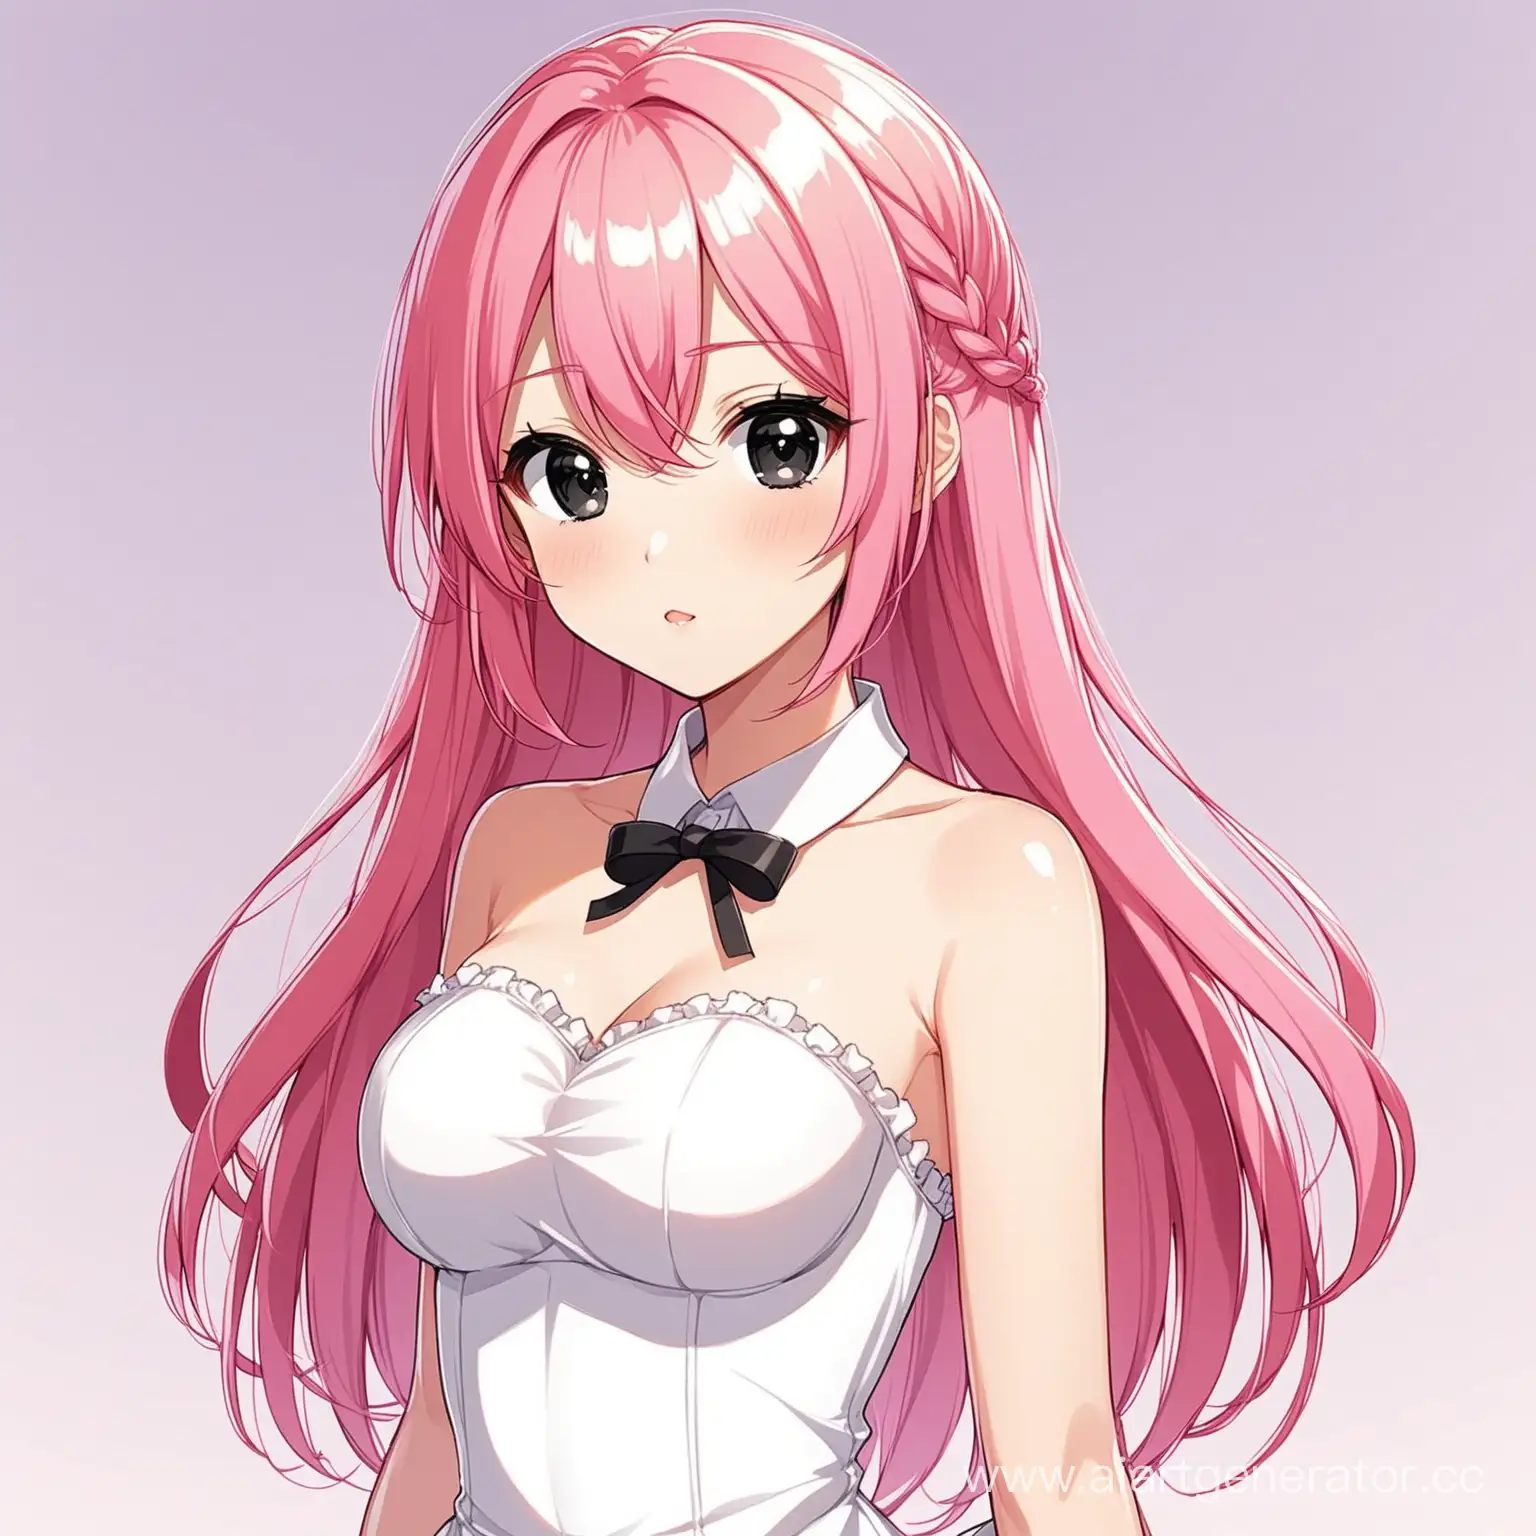 2D model for vtuber. 
Anime-style girl with pink hair, black eyes, white dress, medium-sized breasts
